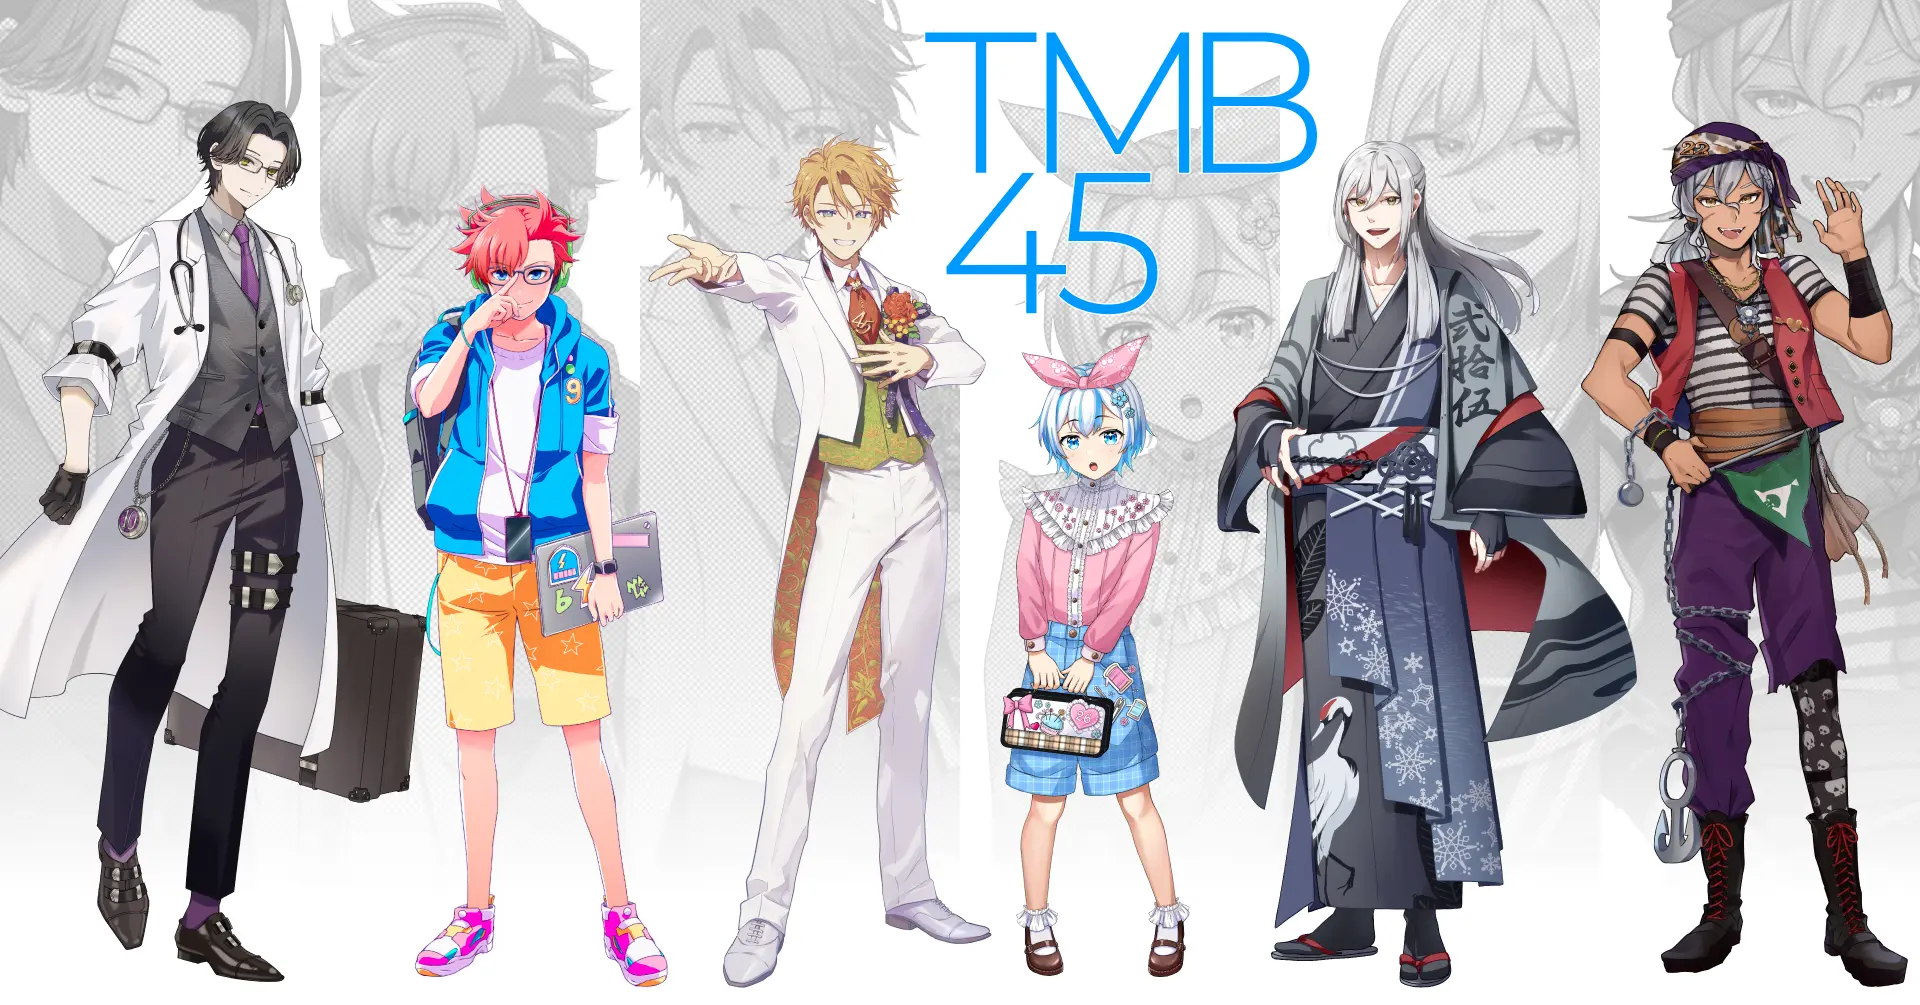 商標区分を擬人化したキャラクター「TMB45」をリリース